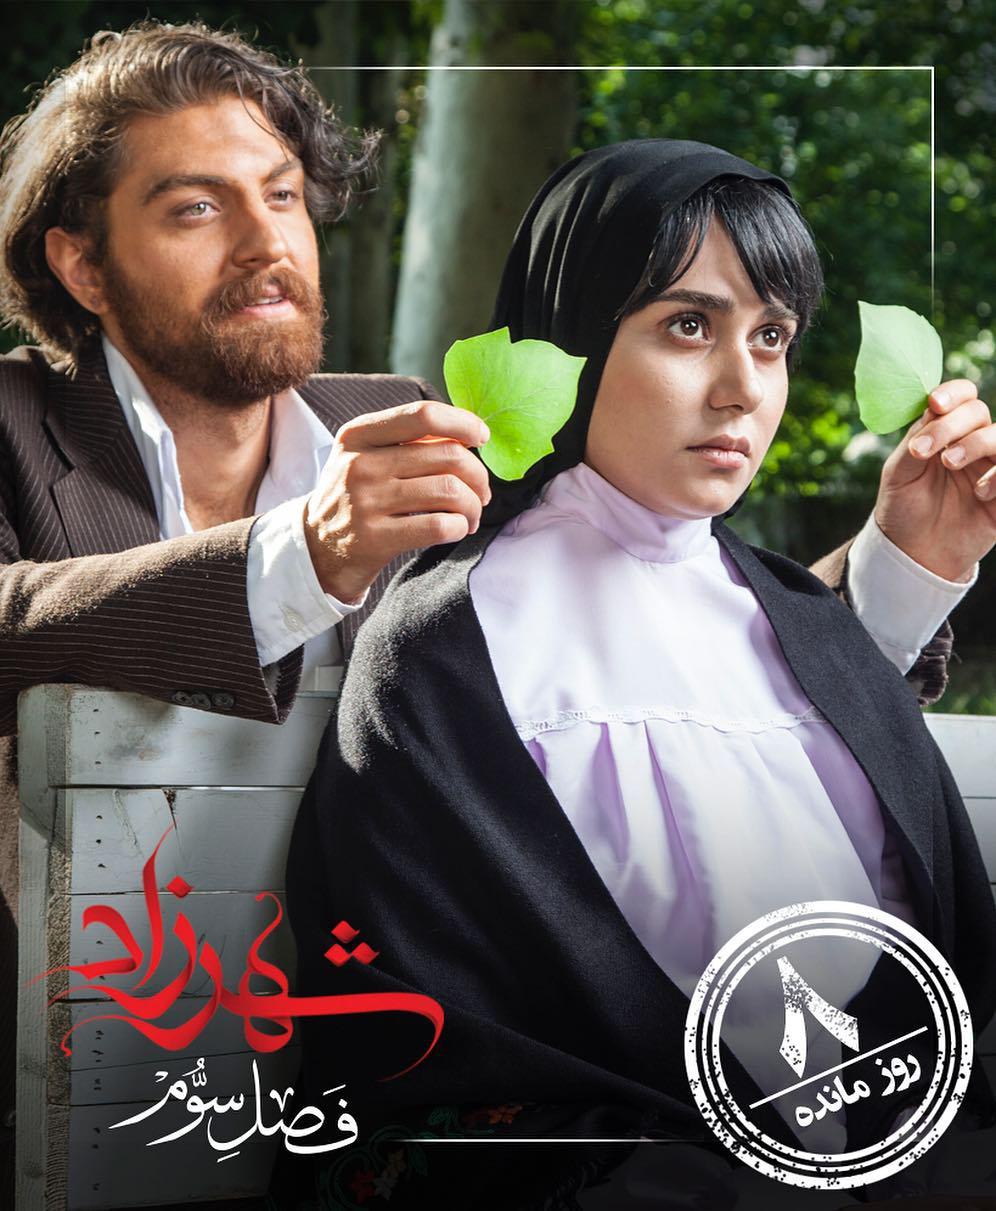 پریناز ایزدیار در پوستر سریال تلویزیونی شهرزاد 3 به همراه امیرحسین فتحی